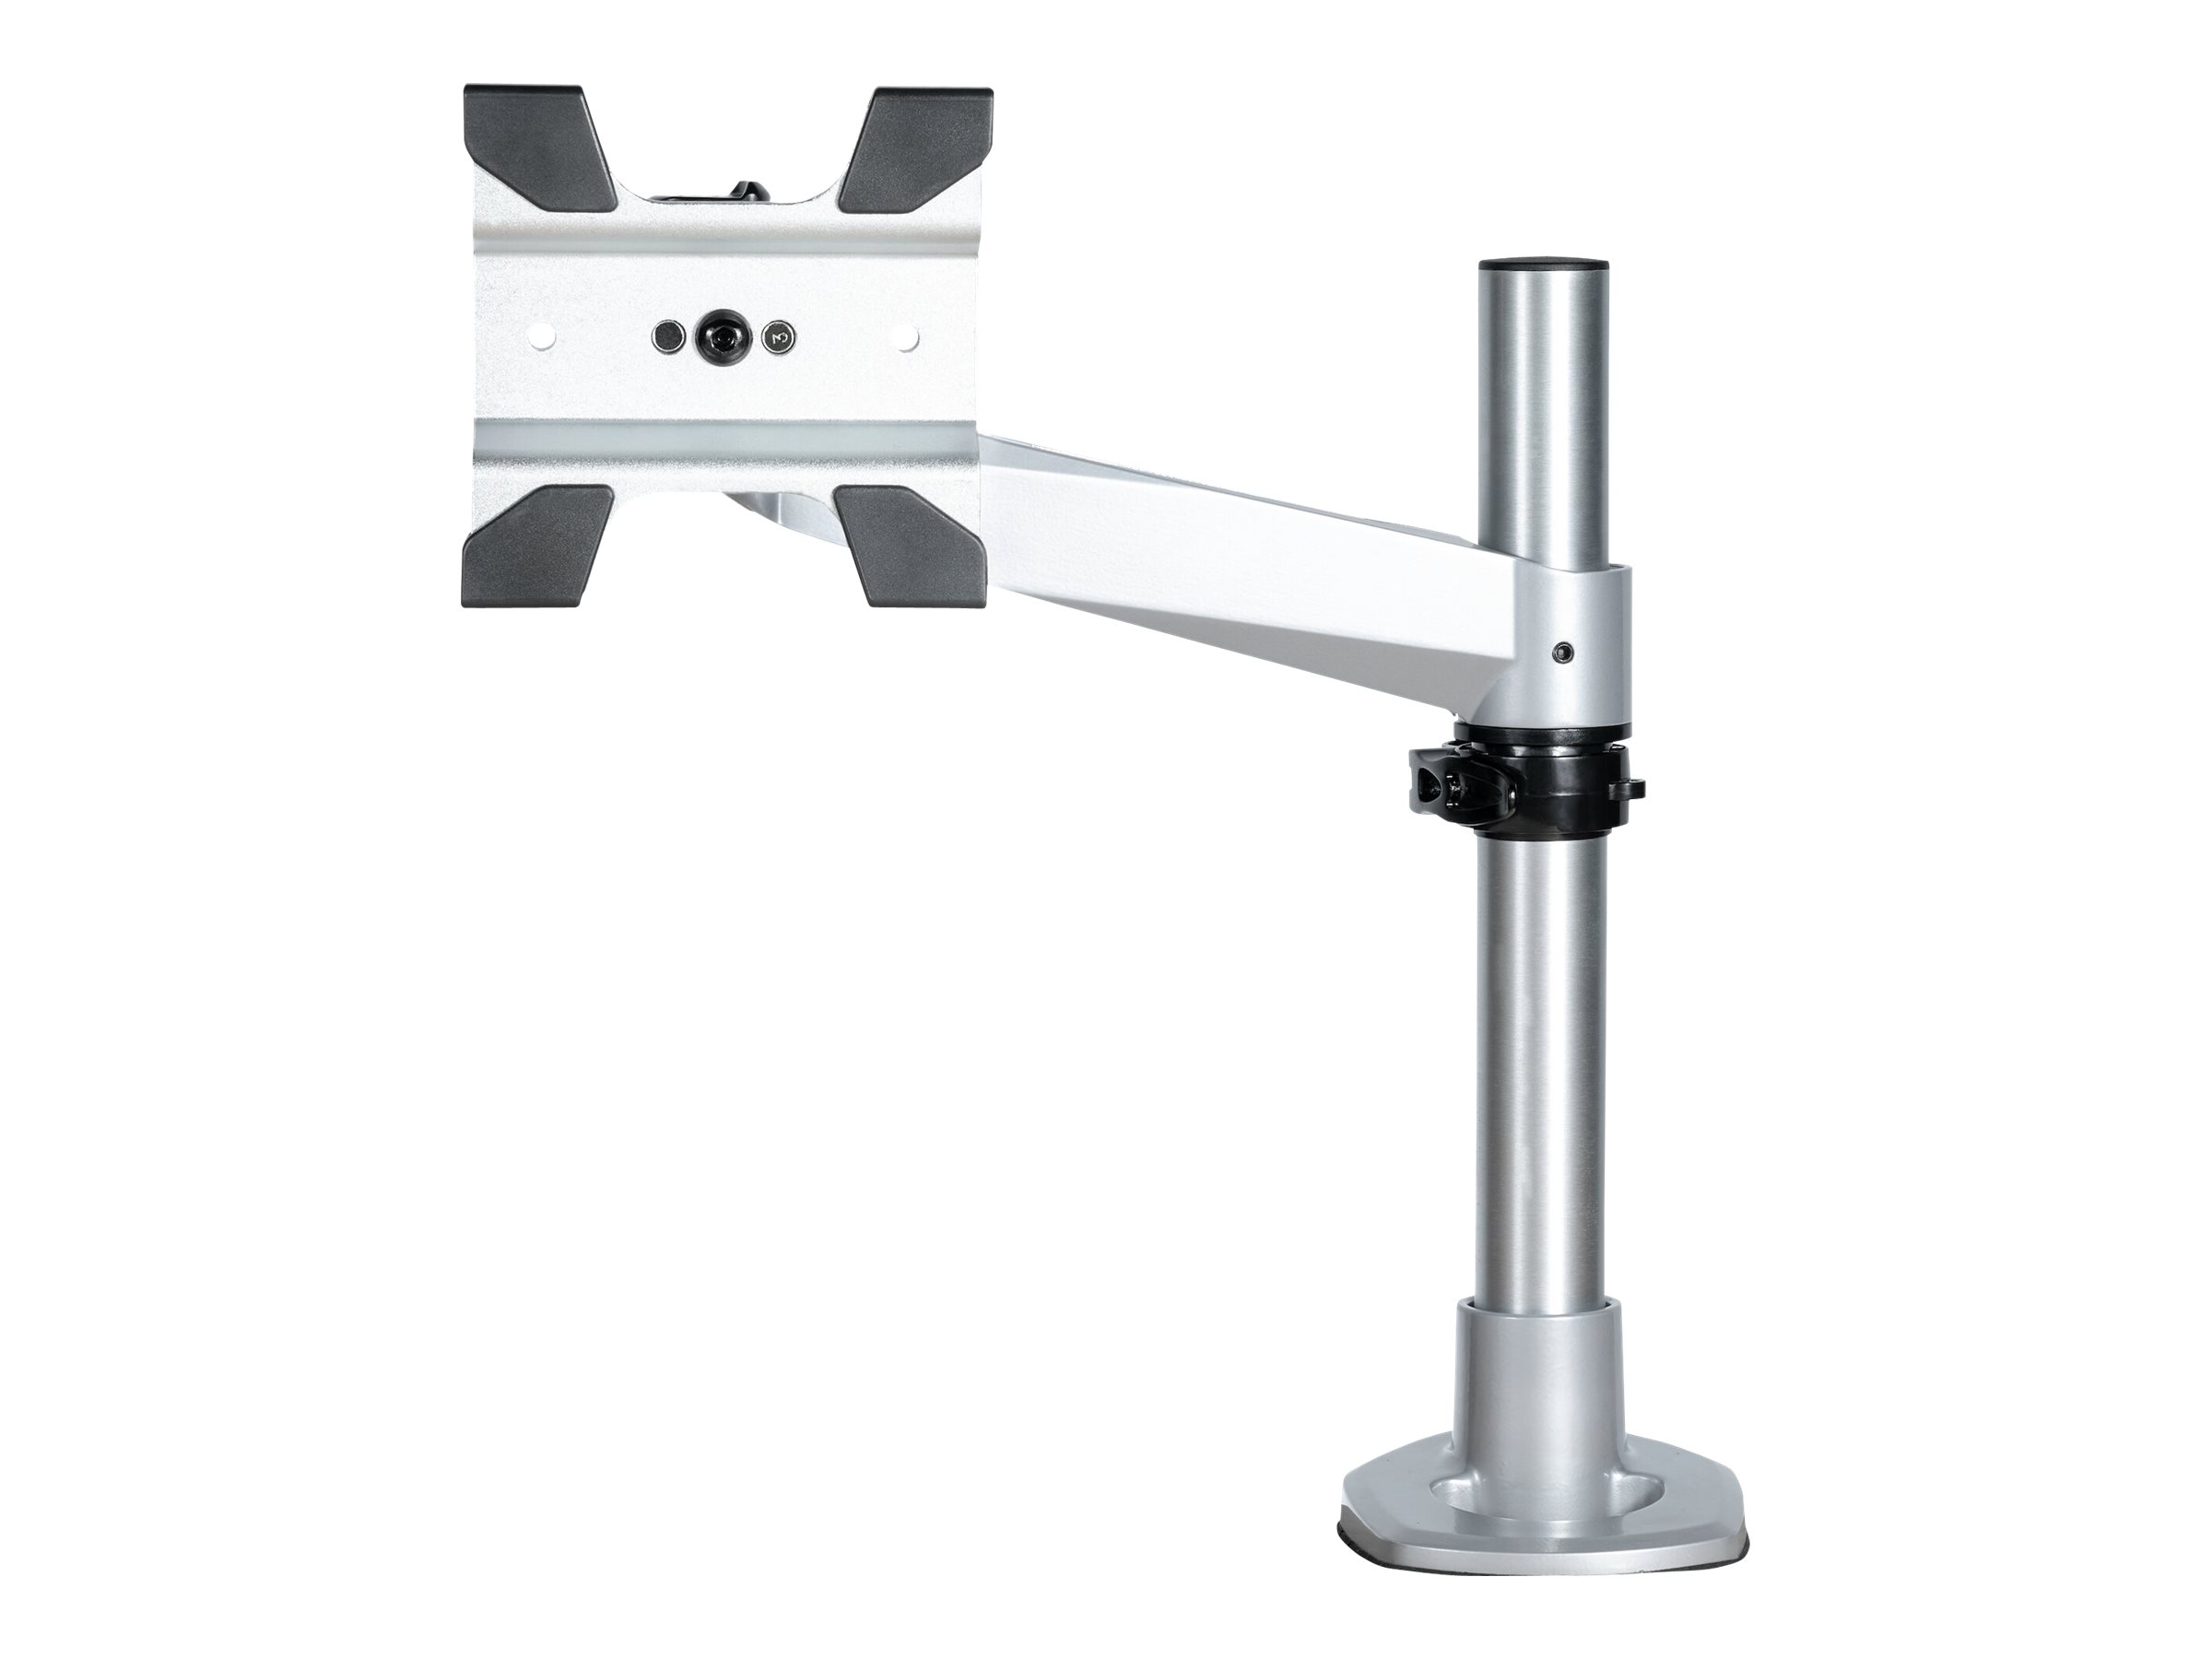 StarTech.com Desk Mount Monitor Arm, VESA or Apple iMac/Thunderbolt Display up to 14kg, Articulating Height Adjustable Single De